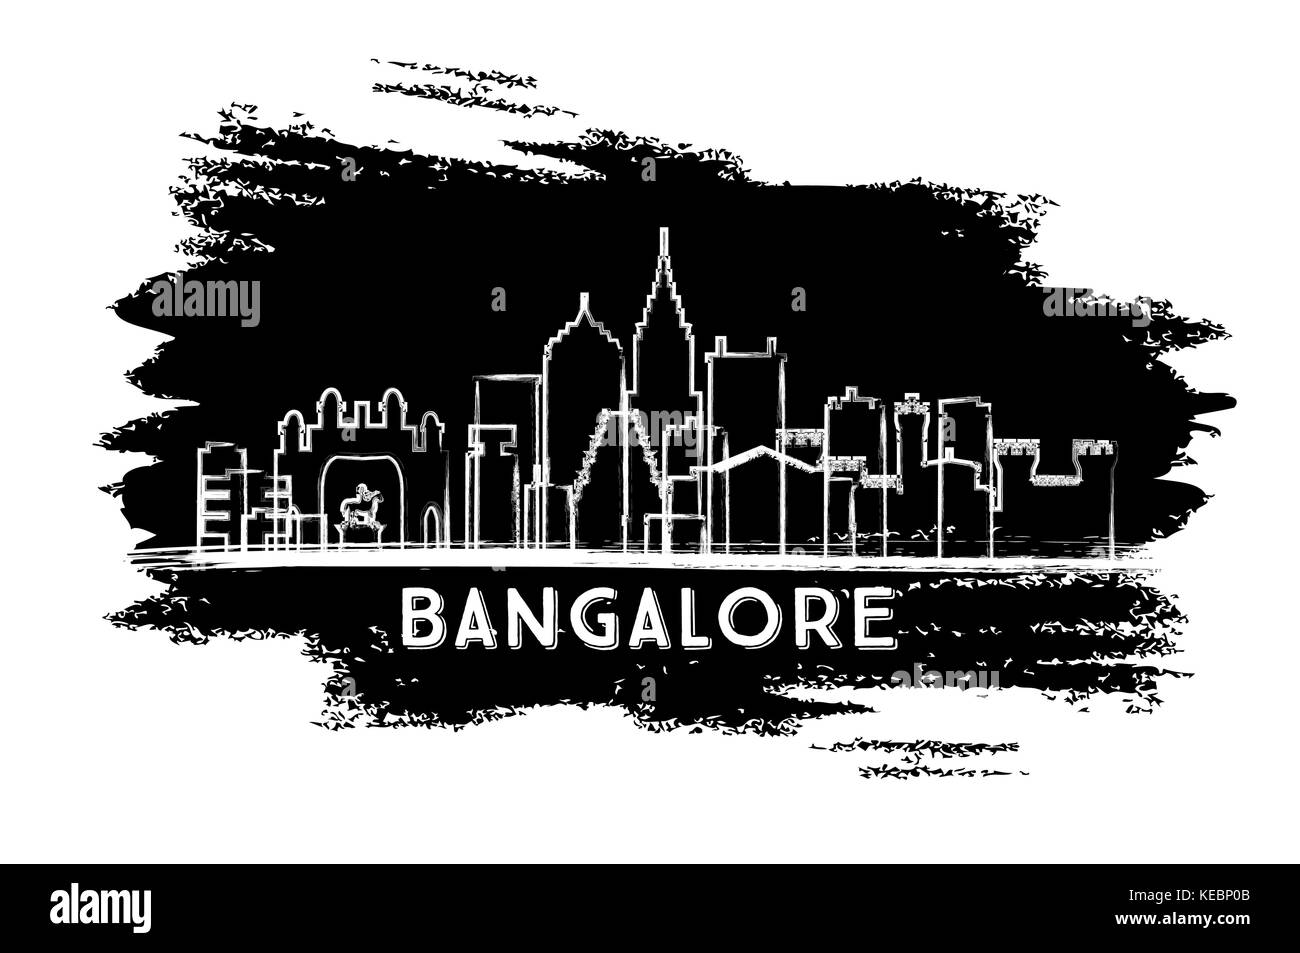 Bangalore Indien Skyline Silhouette. Hand gezeichnete Skizze. Business Travel und Tourismus Konzept mit moderner Architektur. Vector Illustration. Stock Vektor